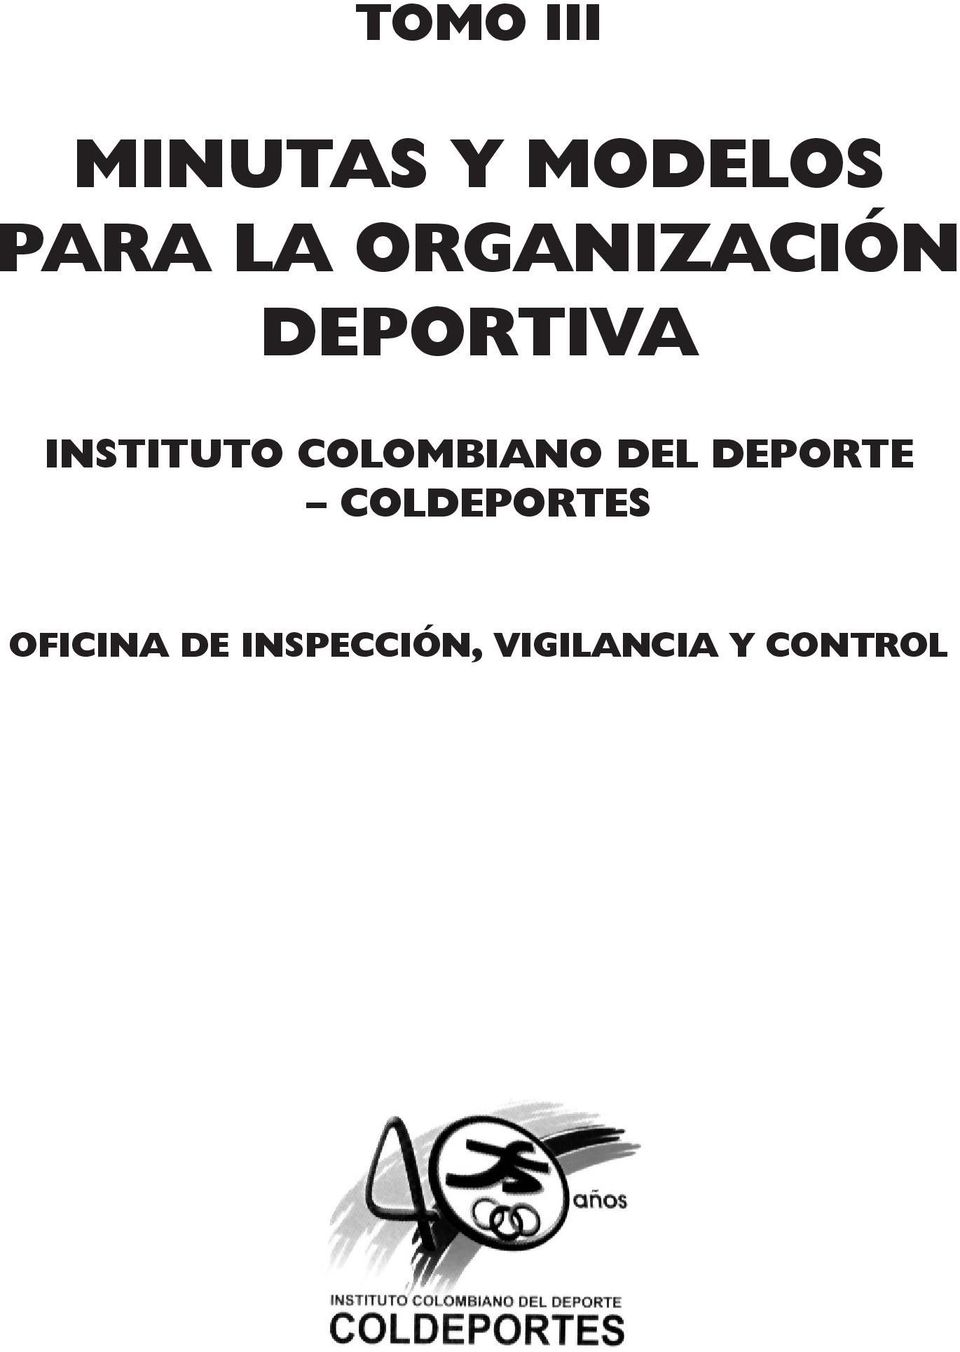 COLOMBIANO DEL DEPORTE COLDEPORTES